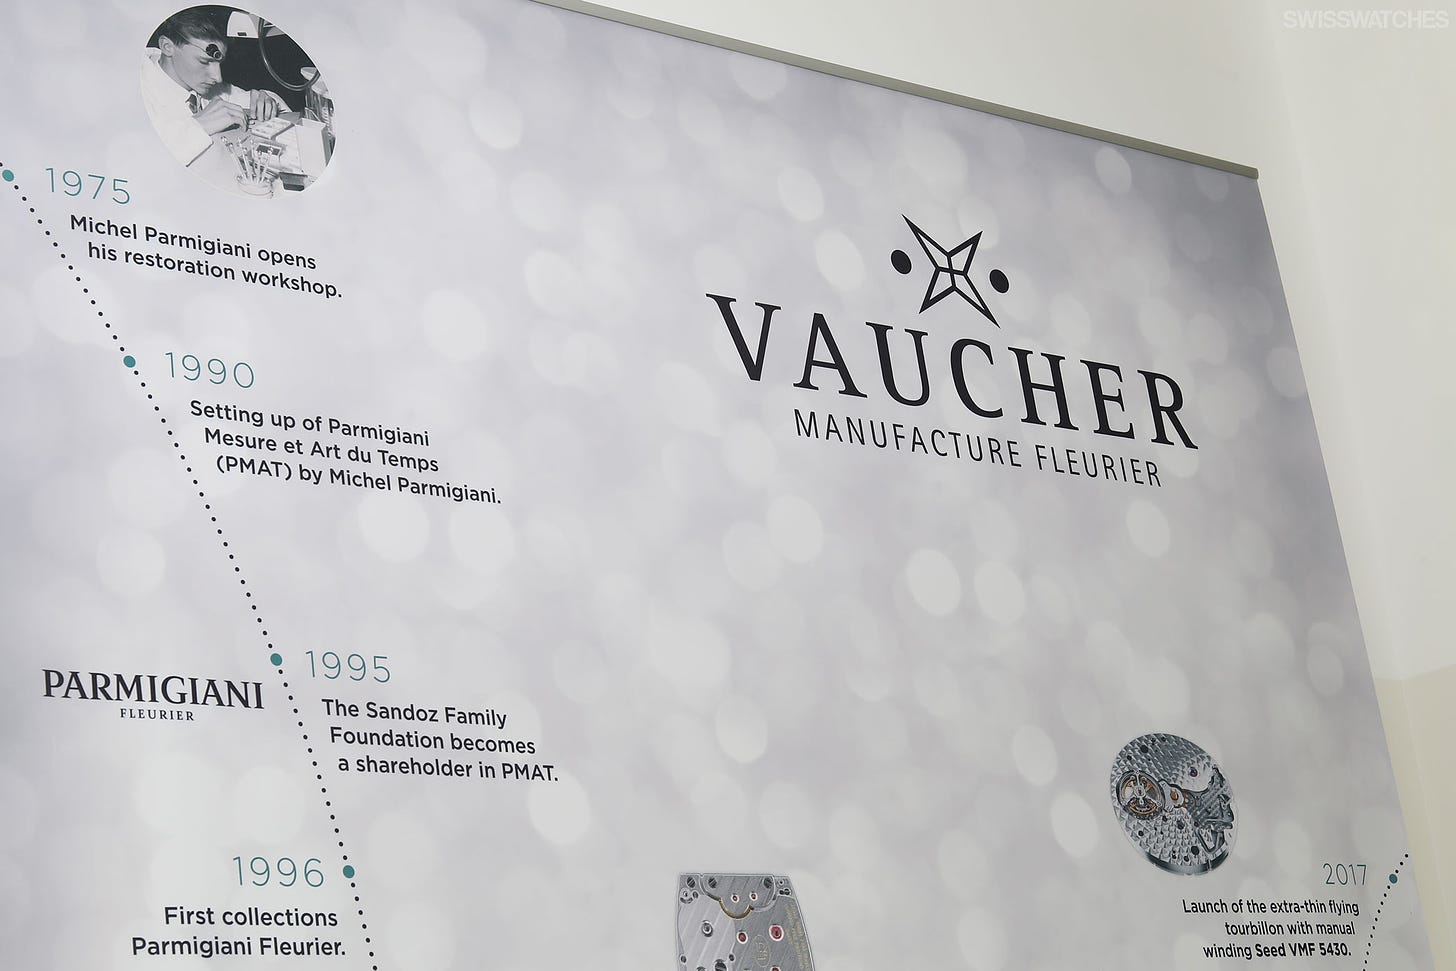 Vaucher-Manufacture-in-Fleurier-Parmigiani-Fleurier-Since-1975